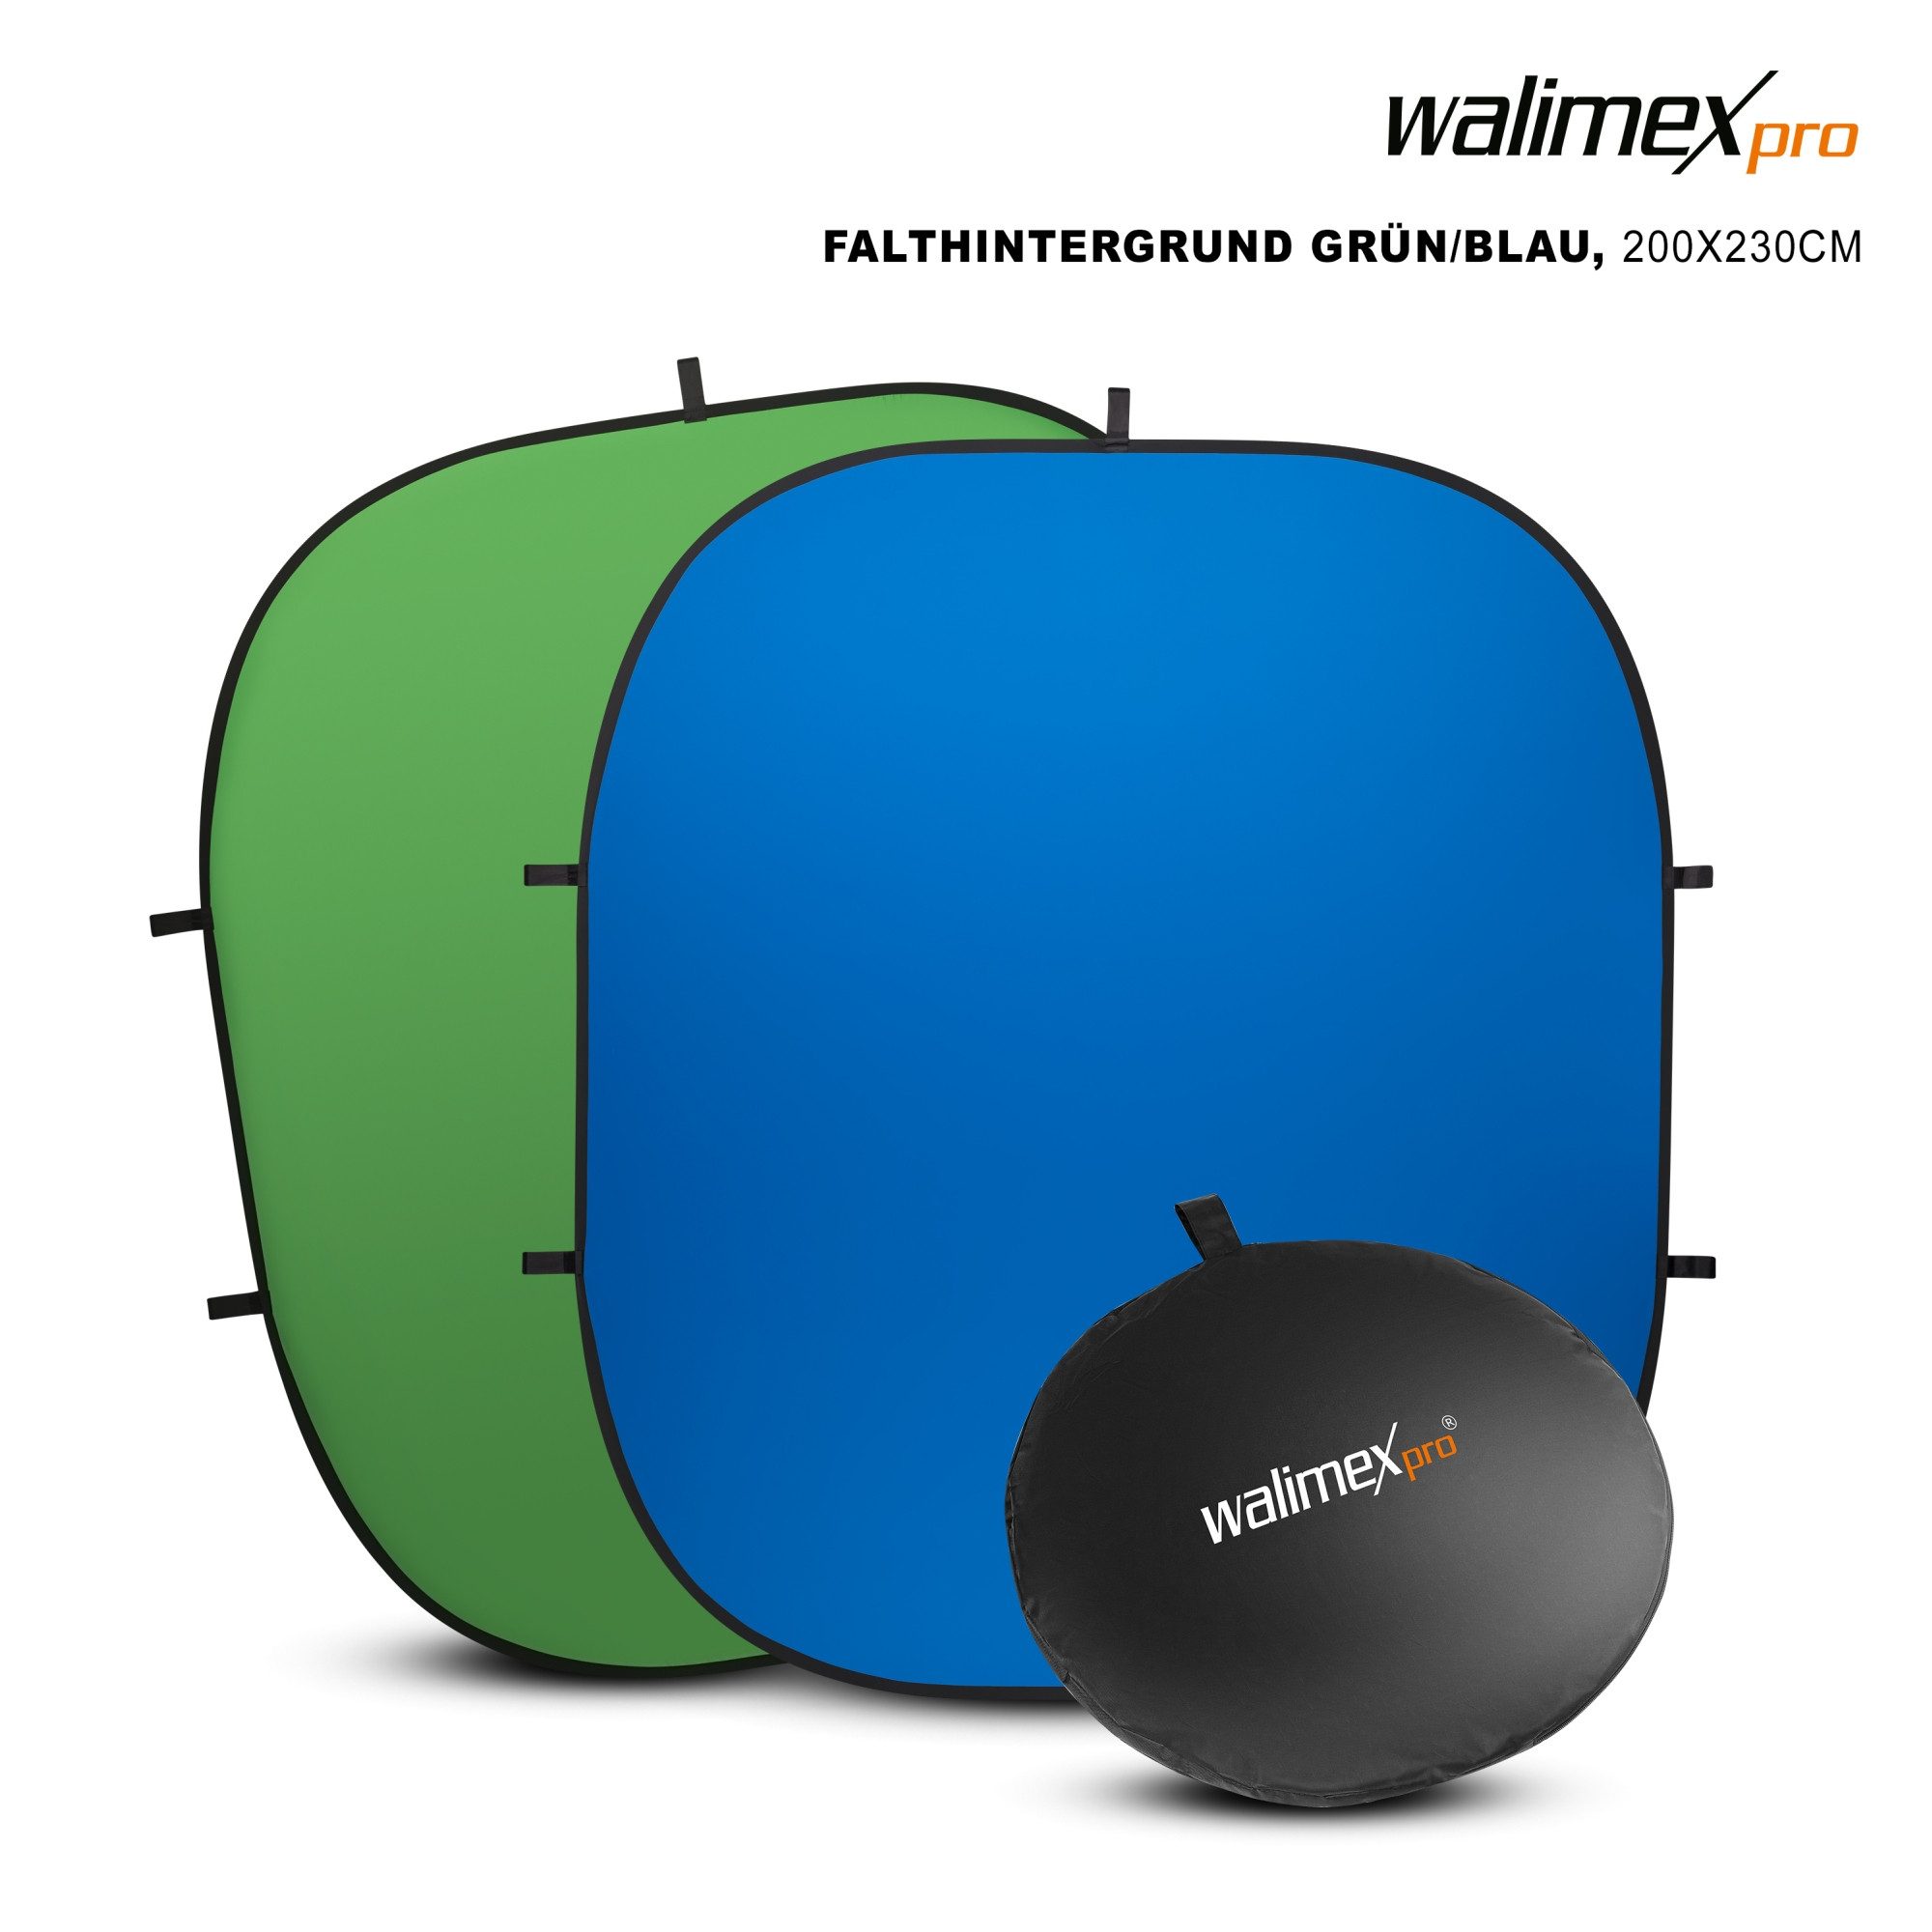 Walimex Pro Falthintergrund 2in1 Falthintergrund grün/blau 200x230